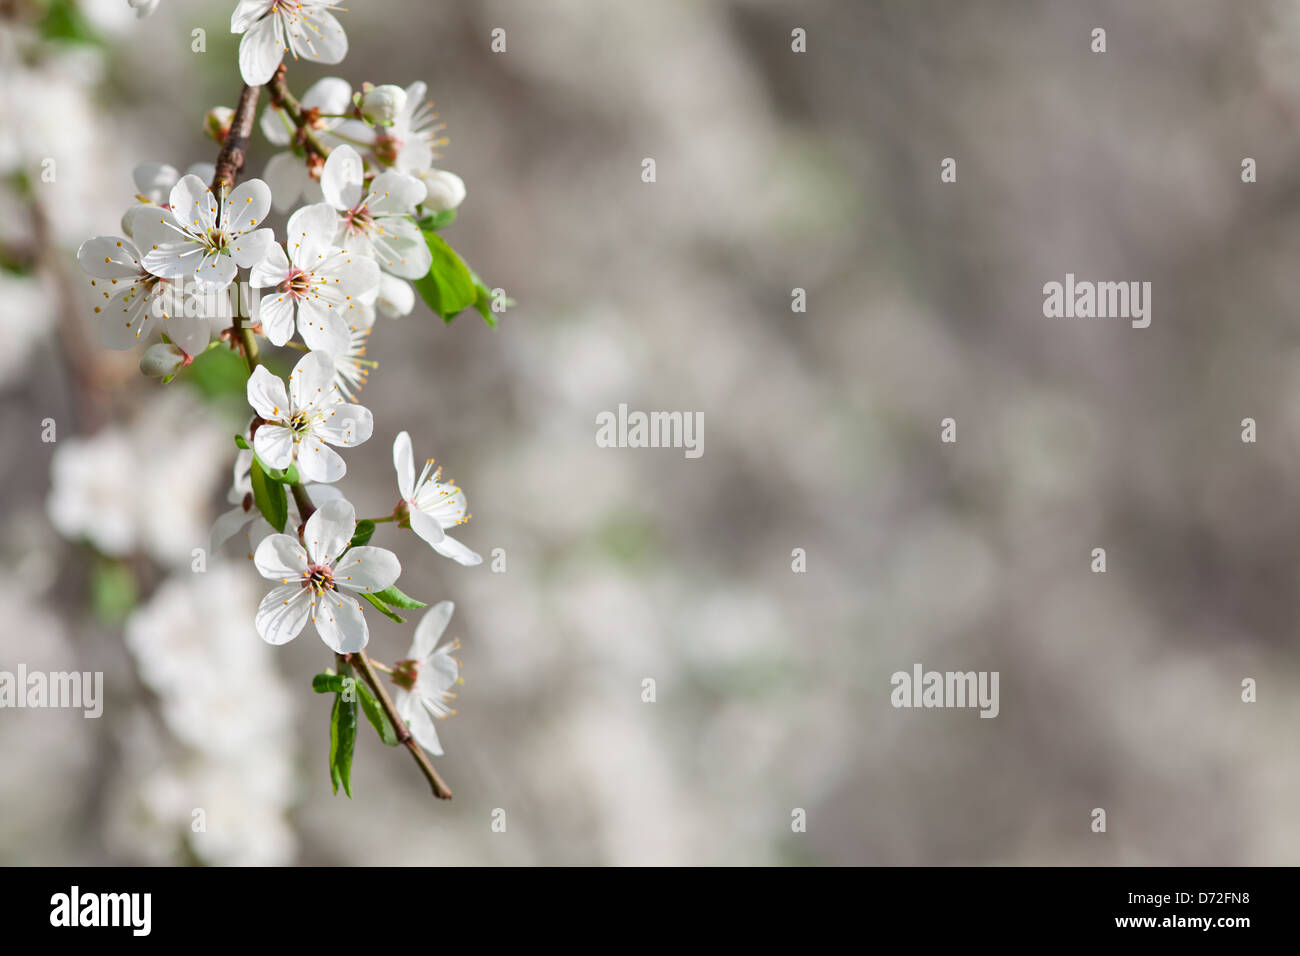 Blooming árbol frutal o flor blanca y nueva hojas verdes, fondo de primavera Foto de stock